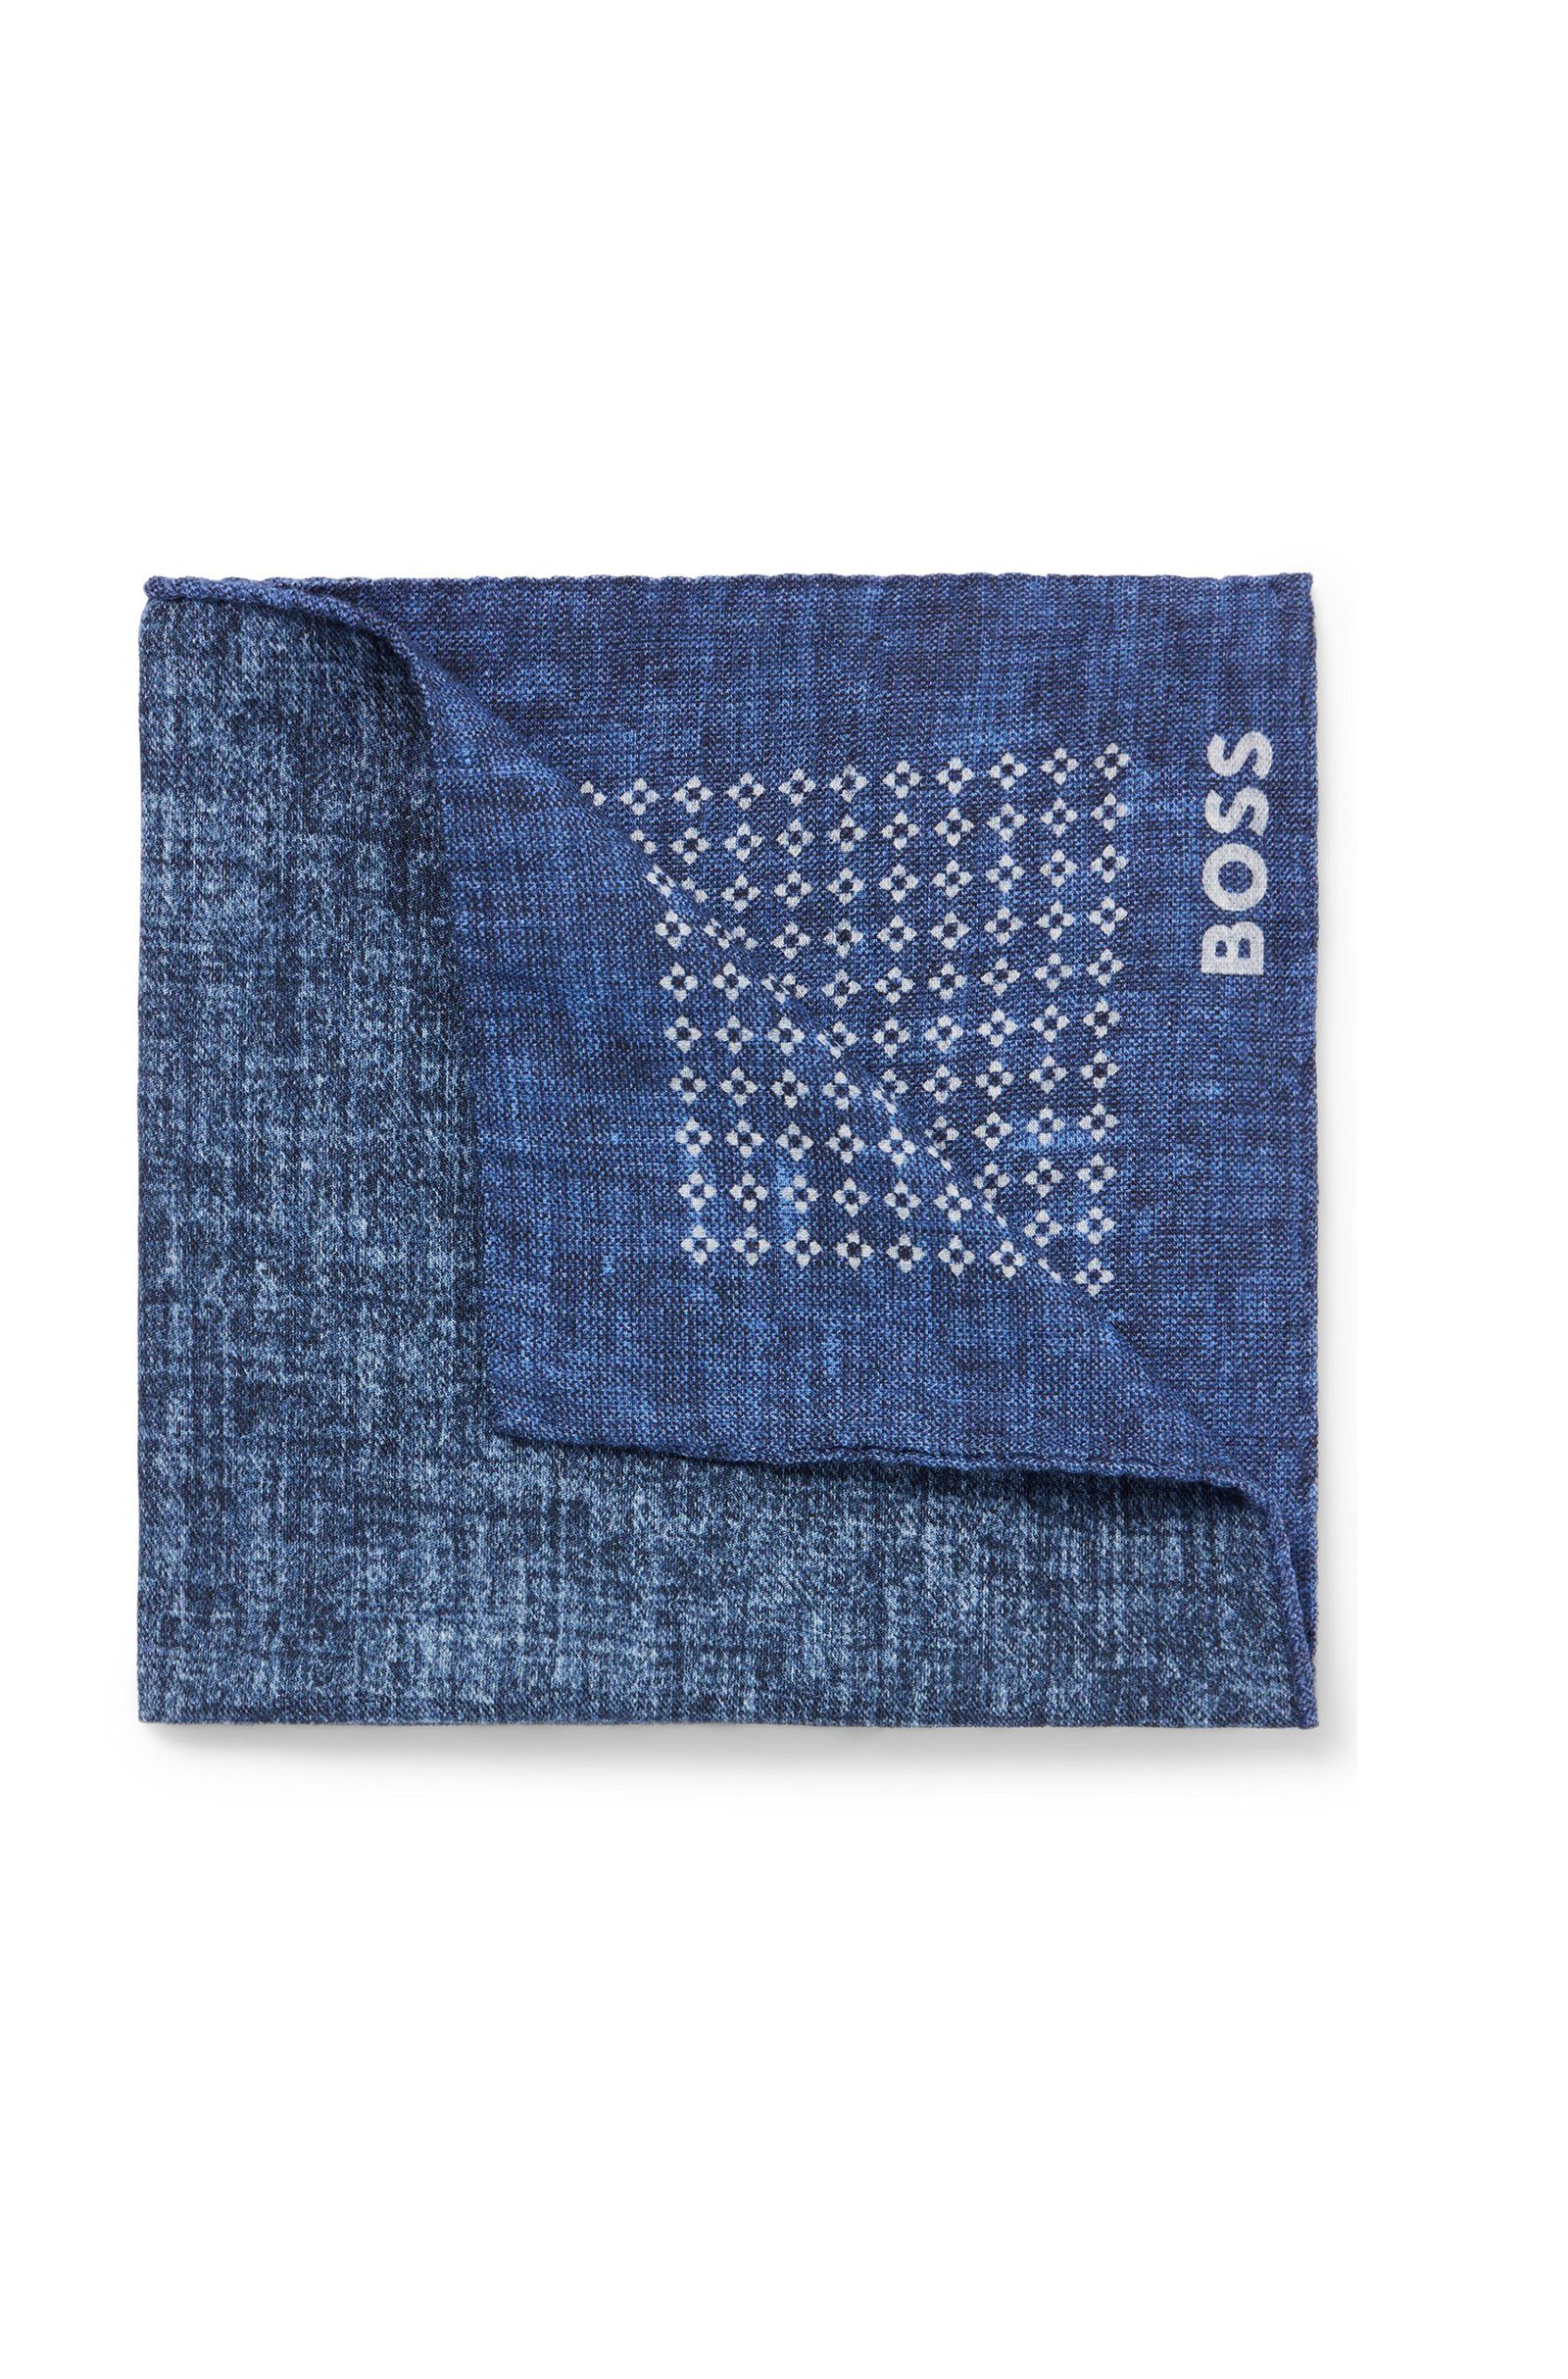 BOSS Krawatte H-POCKET SQ-222 (476) Blau (keine Angabe)